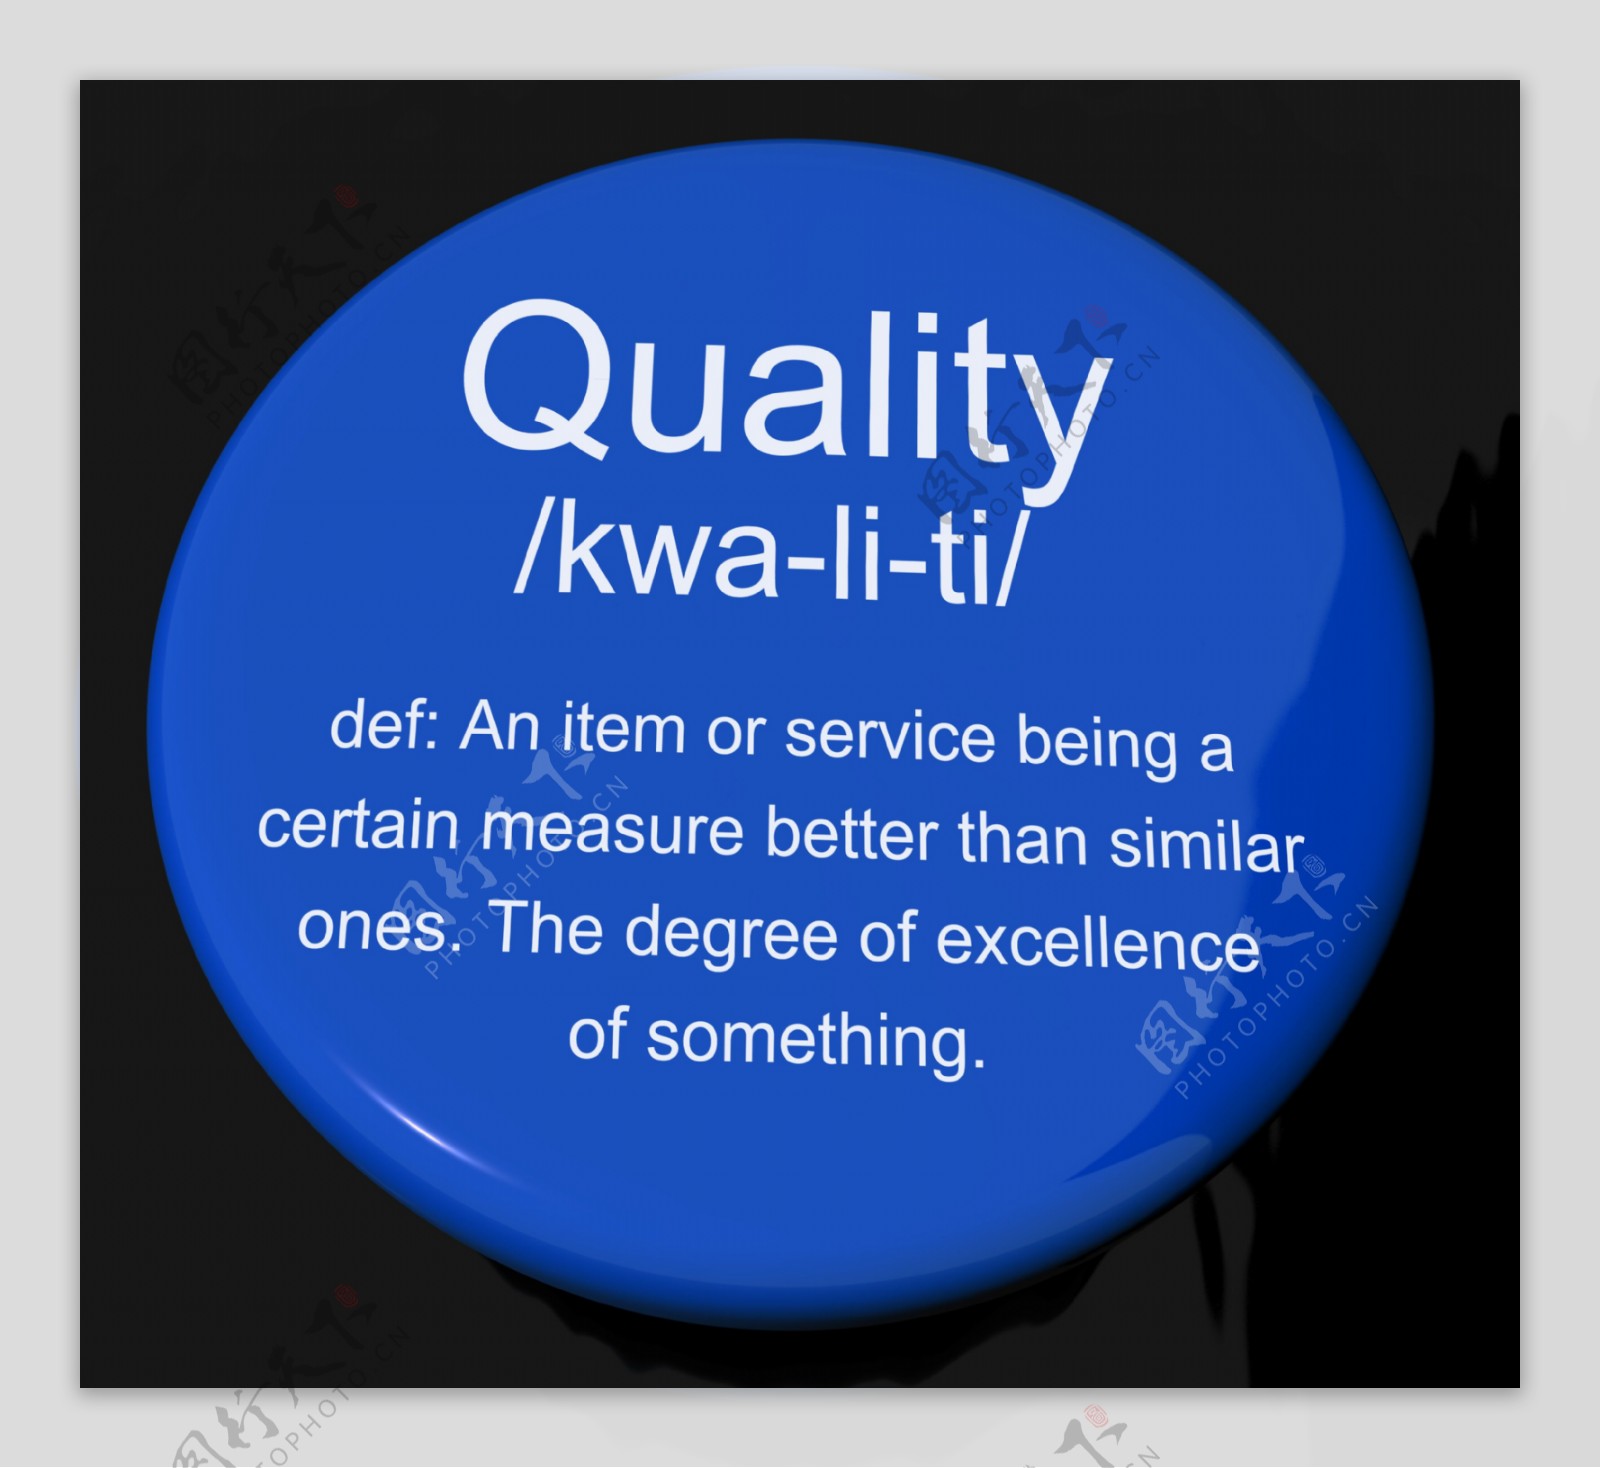 质量的定义按钮显示出优良的优质产品